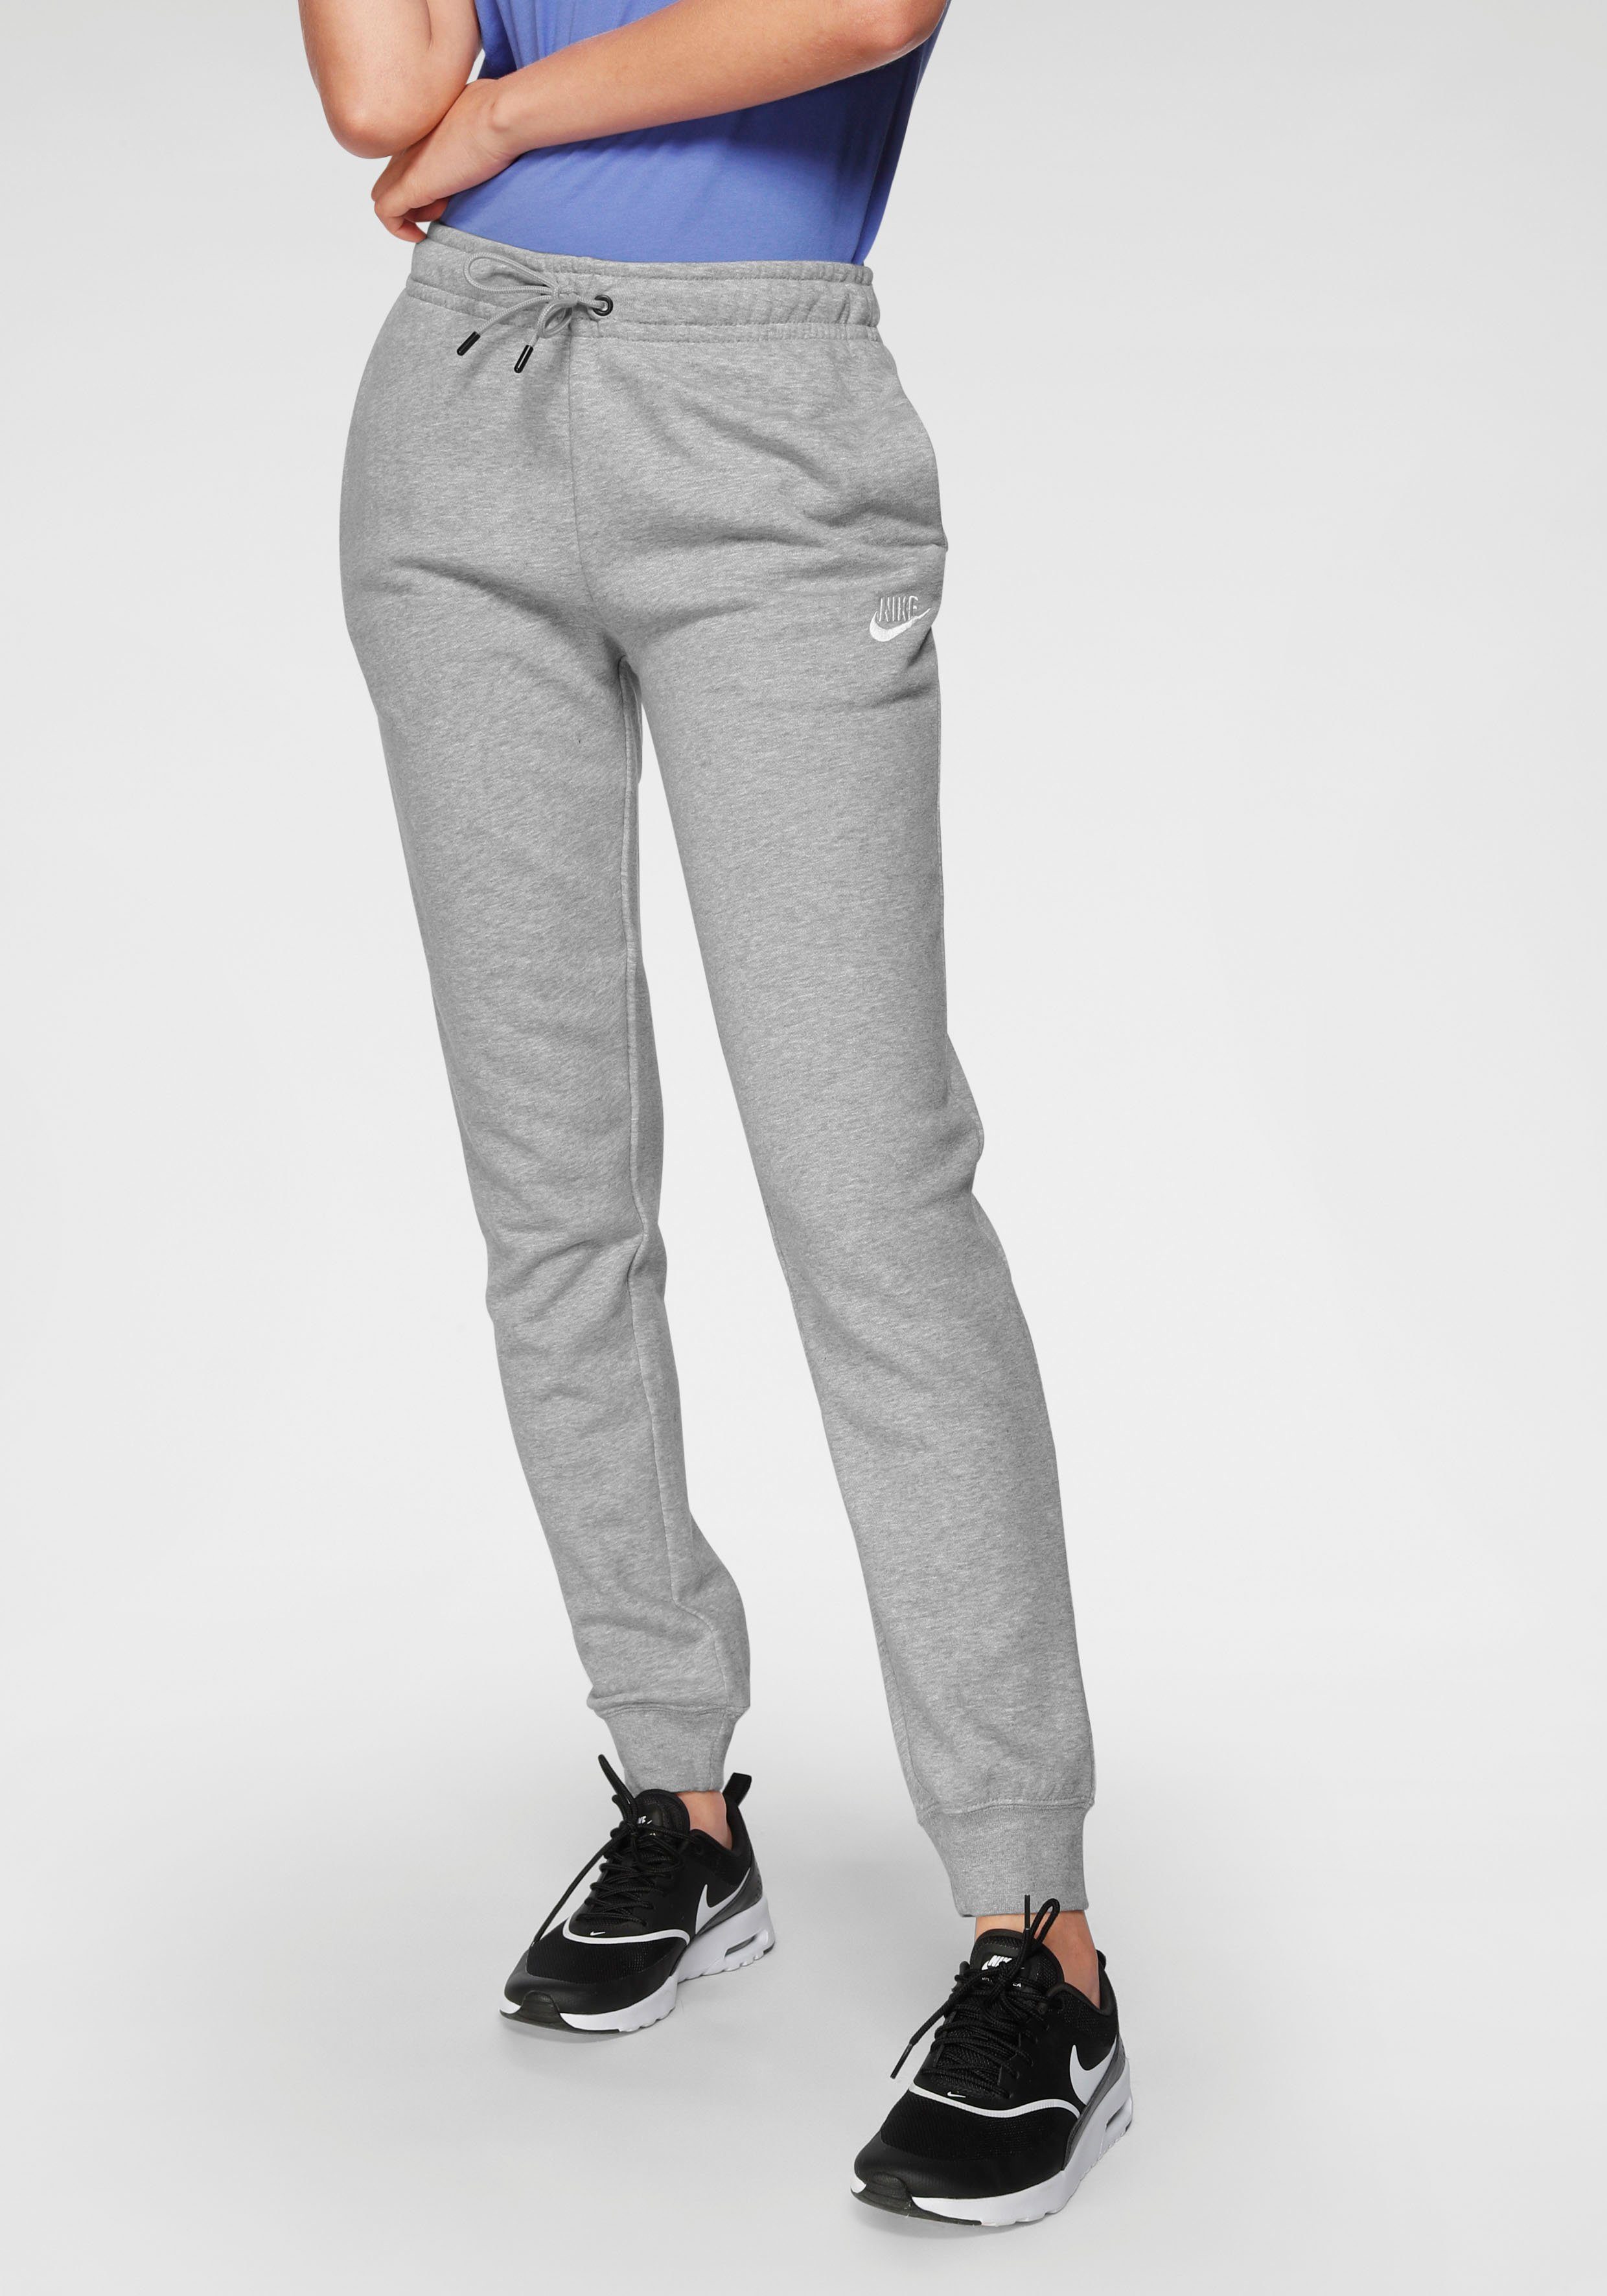 ESSENTIAL grau-meliert Sportswear PANTS Jogginghose WOMENS Nike FLEECE